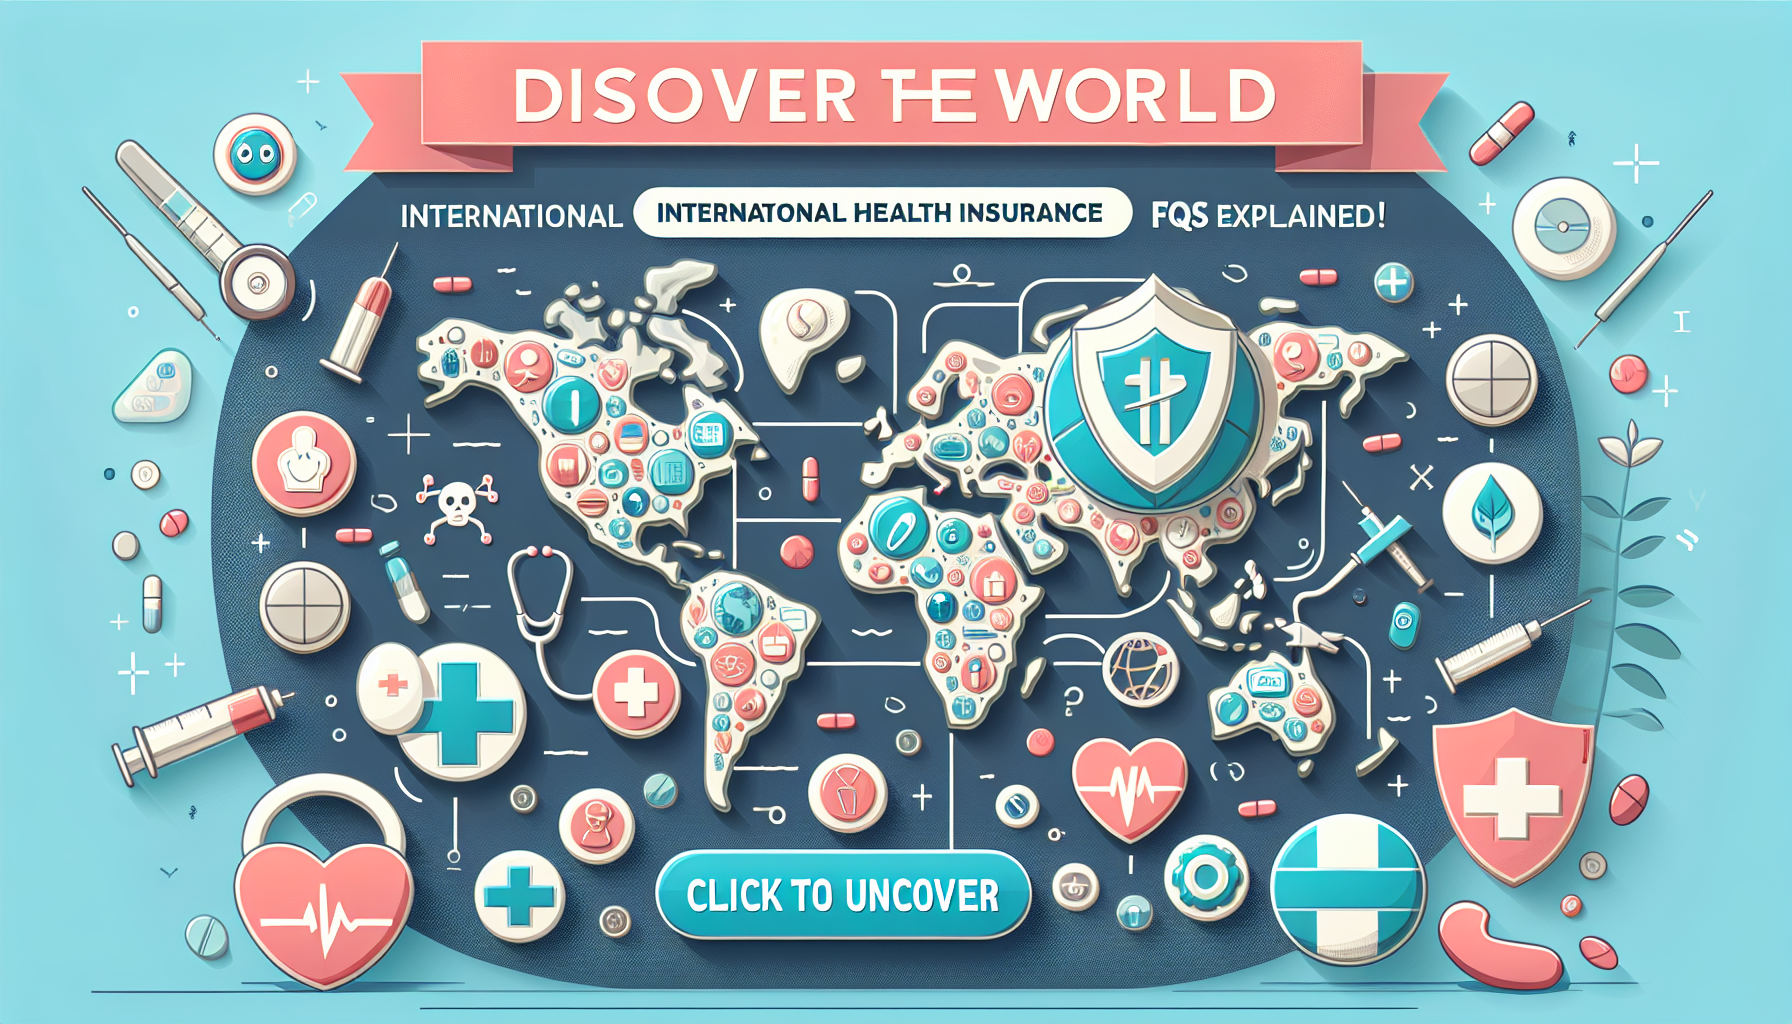 découvrez tout ce que vous devez savoir sur l'assurance santé internationale : définition, couverture, avantages et bien plus encore dans notre faq complète.